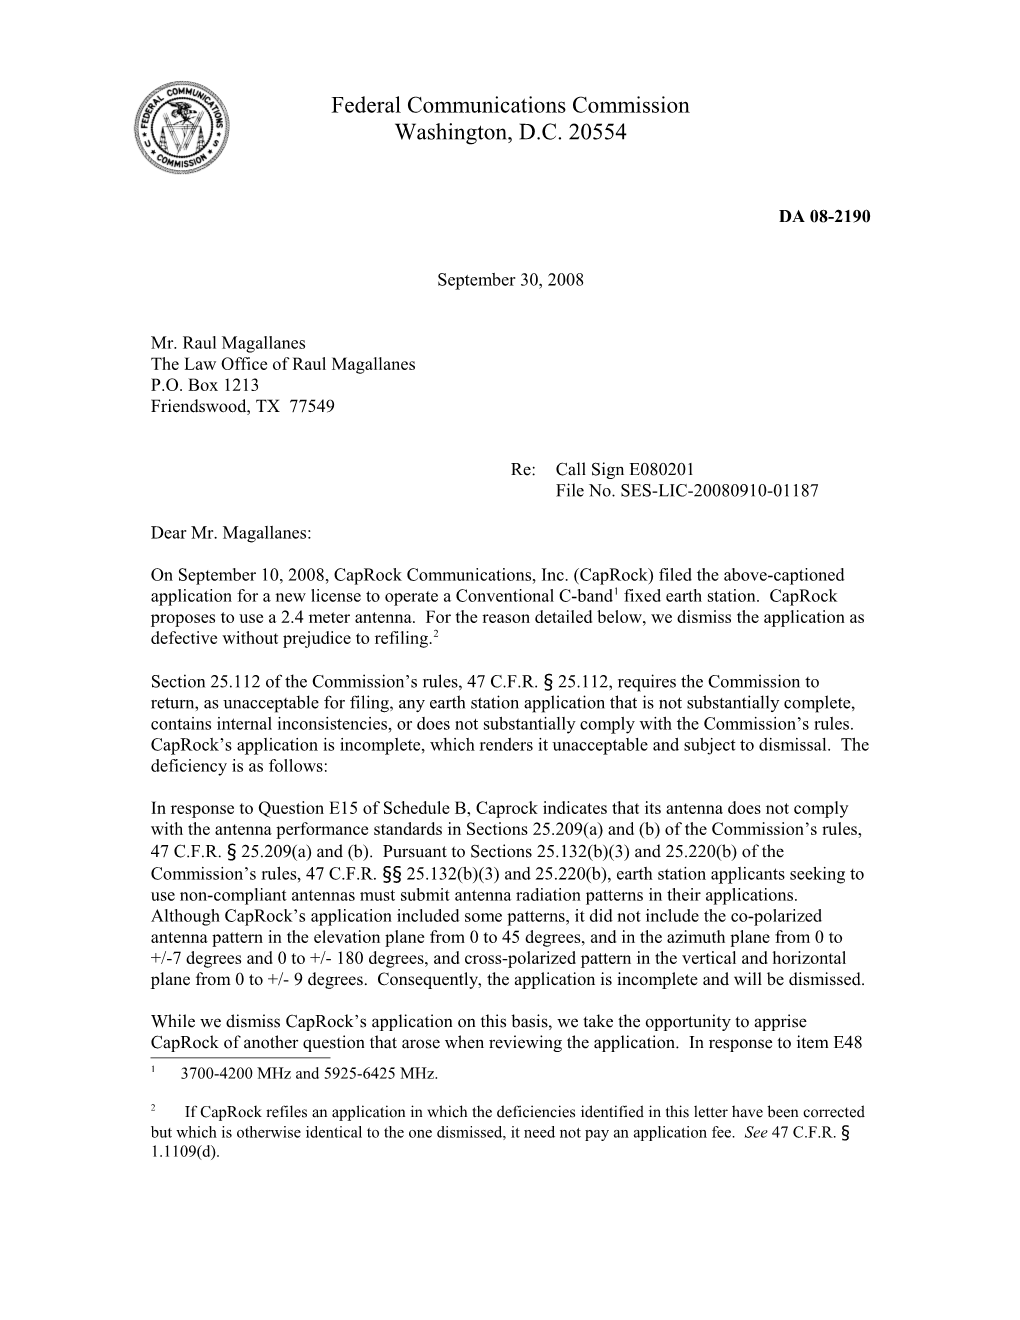 Federal Communications Commission DA 08-2190